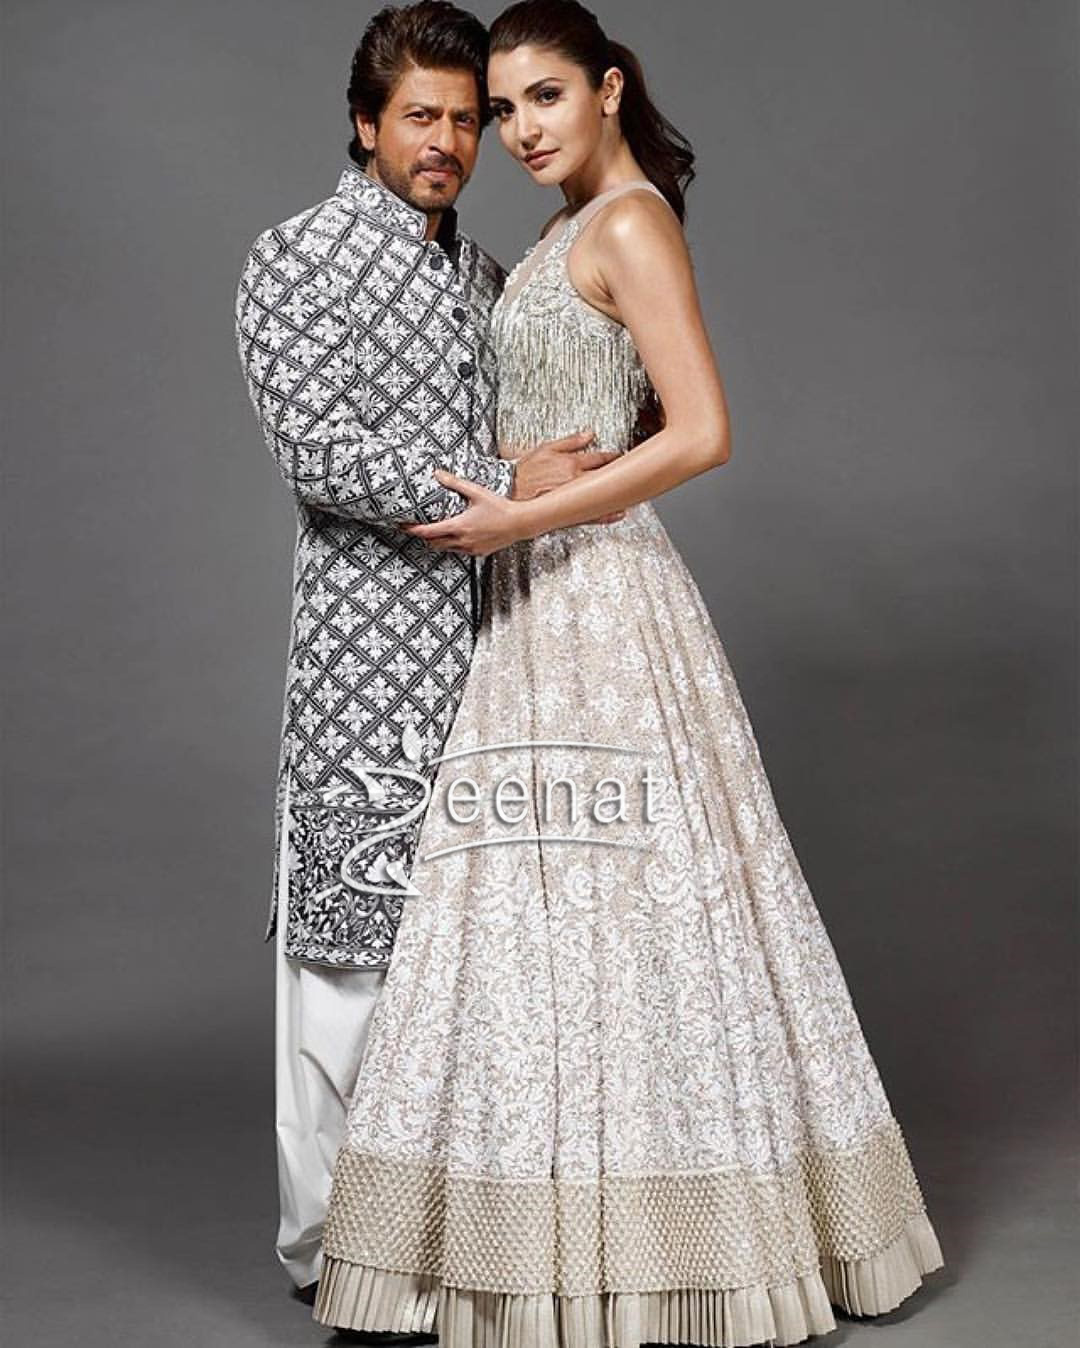 Shahrukh Khan and Anushka Sharma at Mijwan Summer 2017 Couture Show